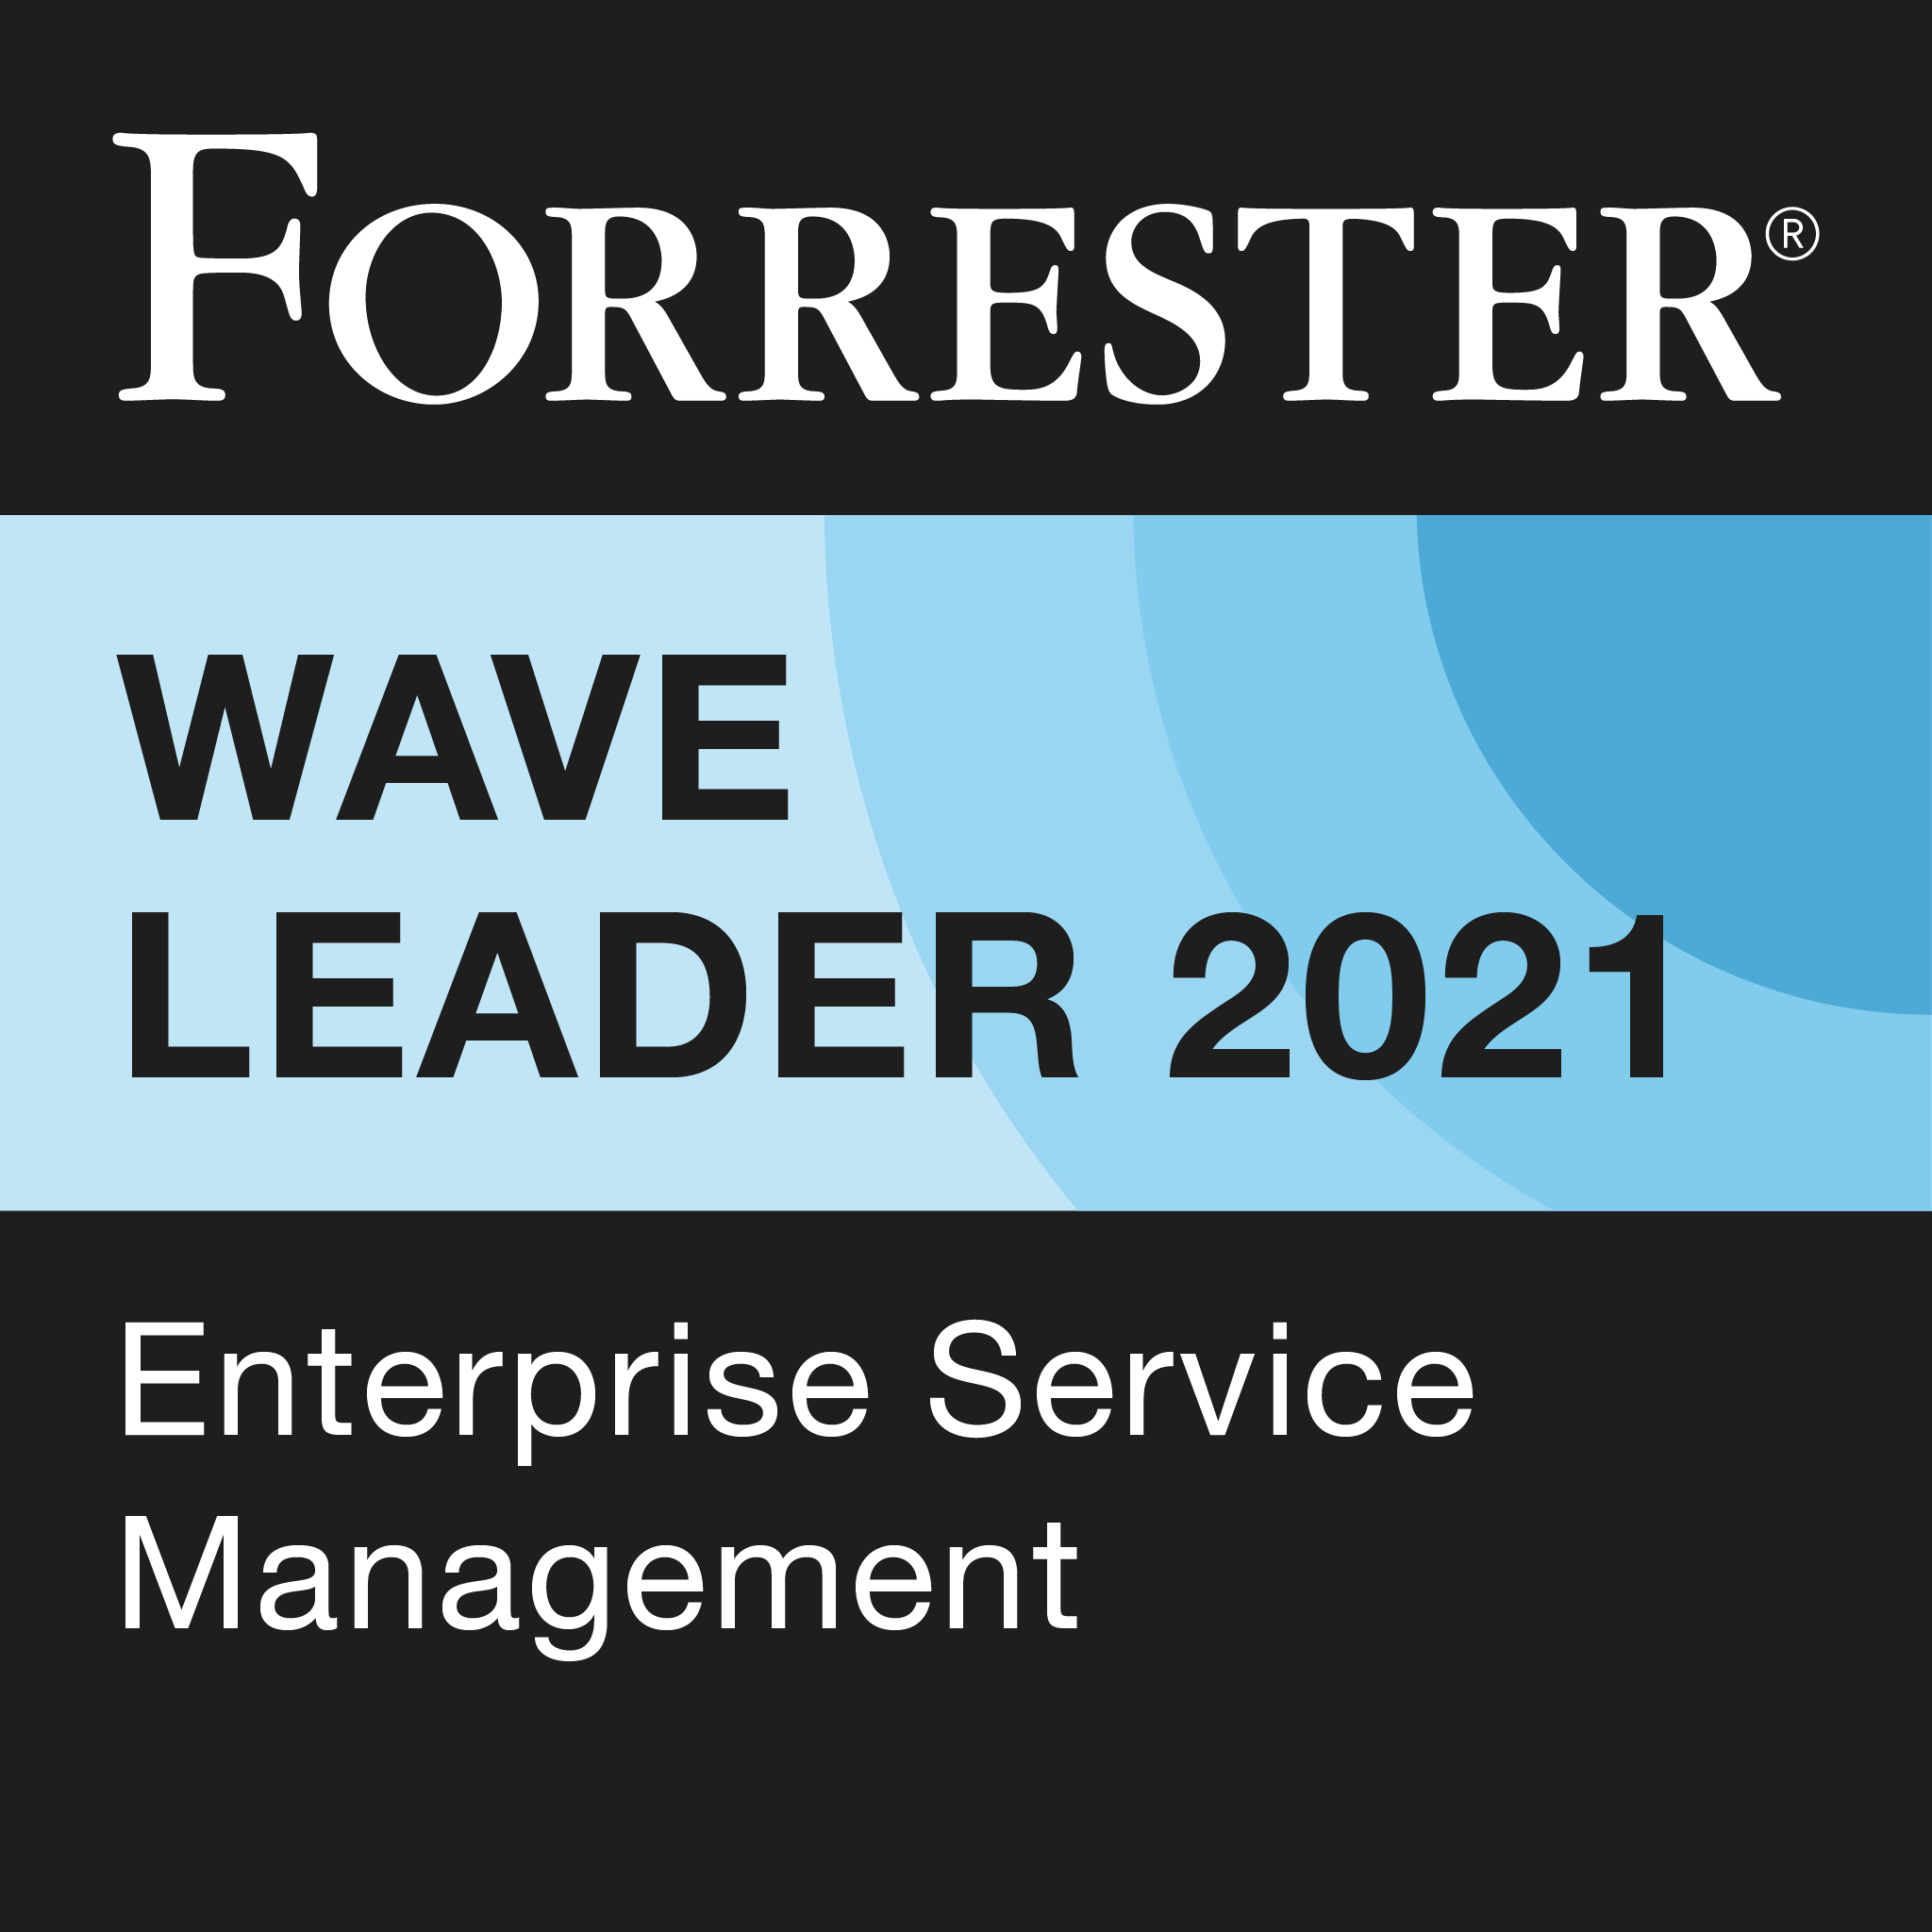 2021 年企业服务管理 Forrester Wave 领导者